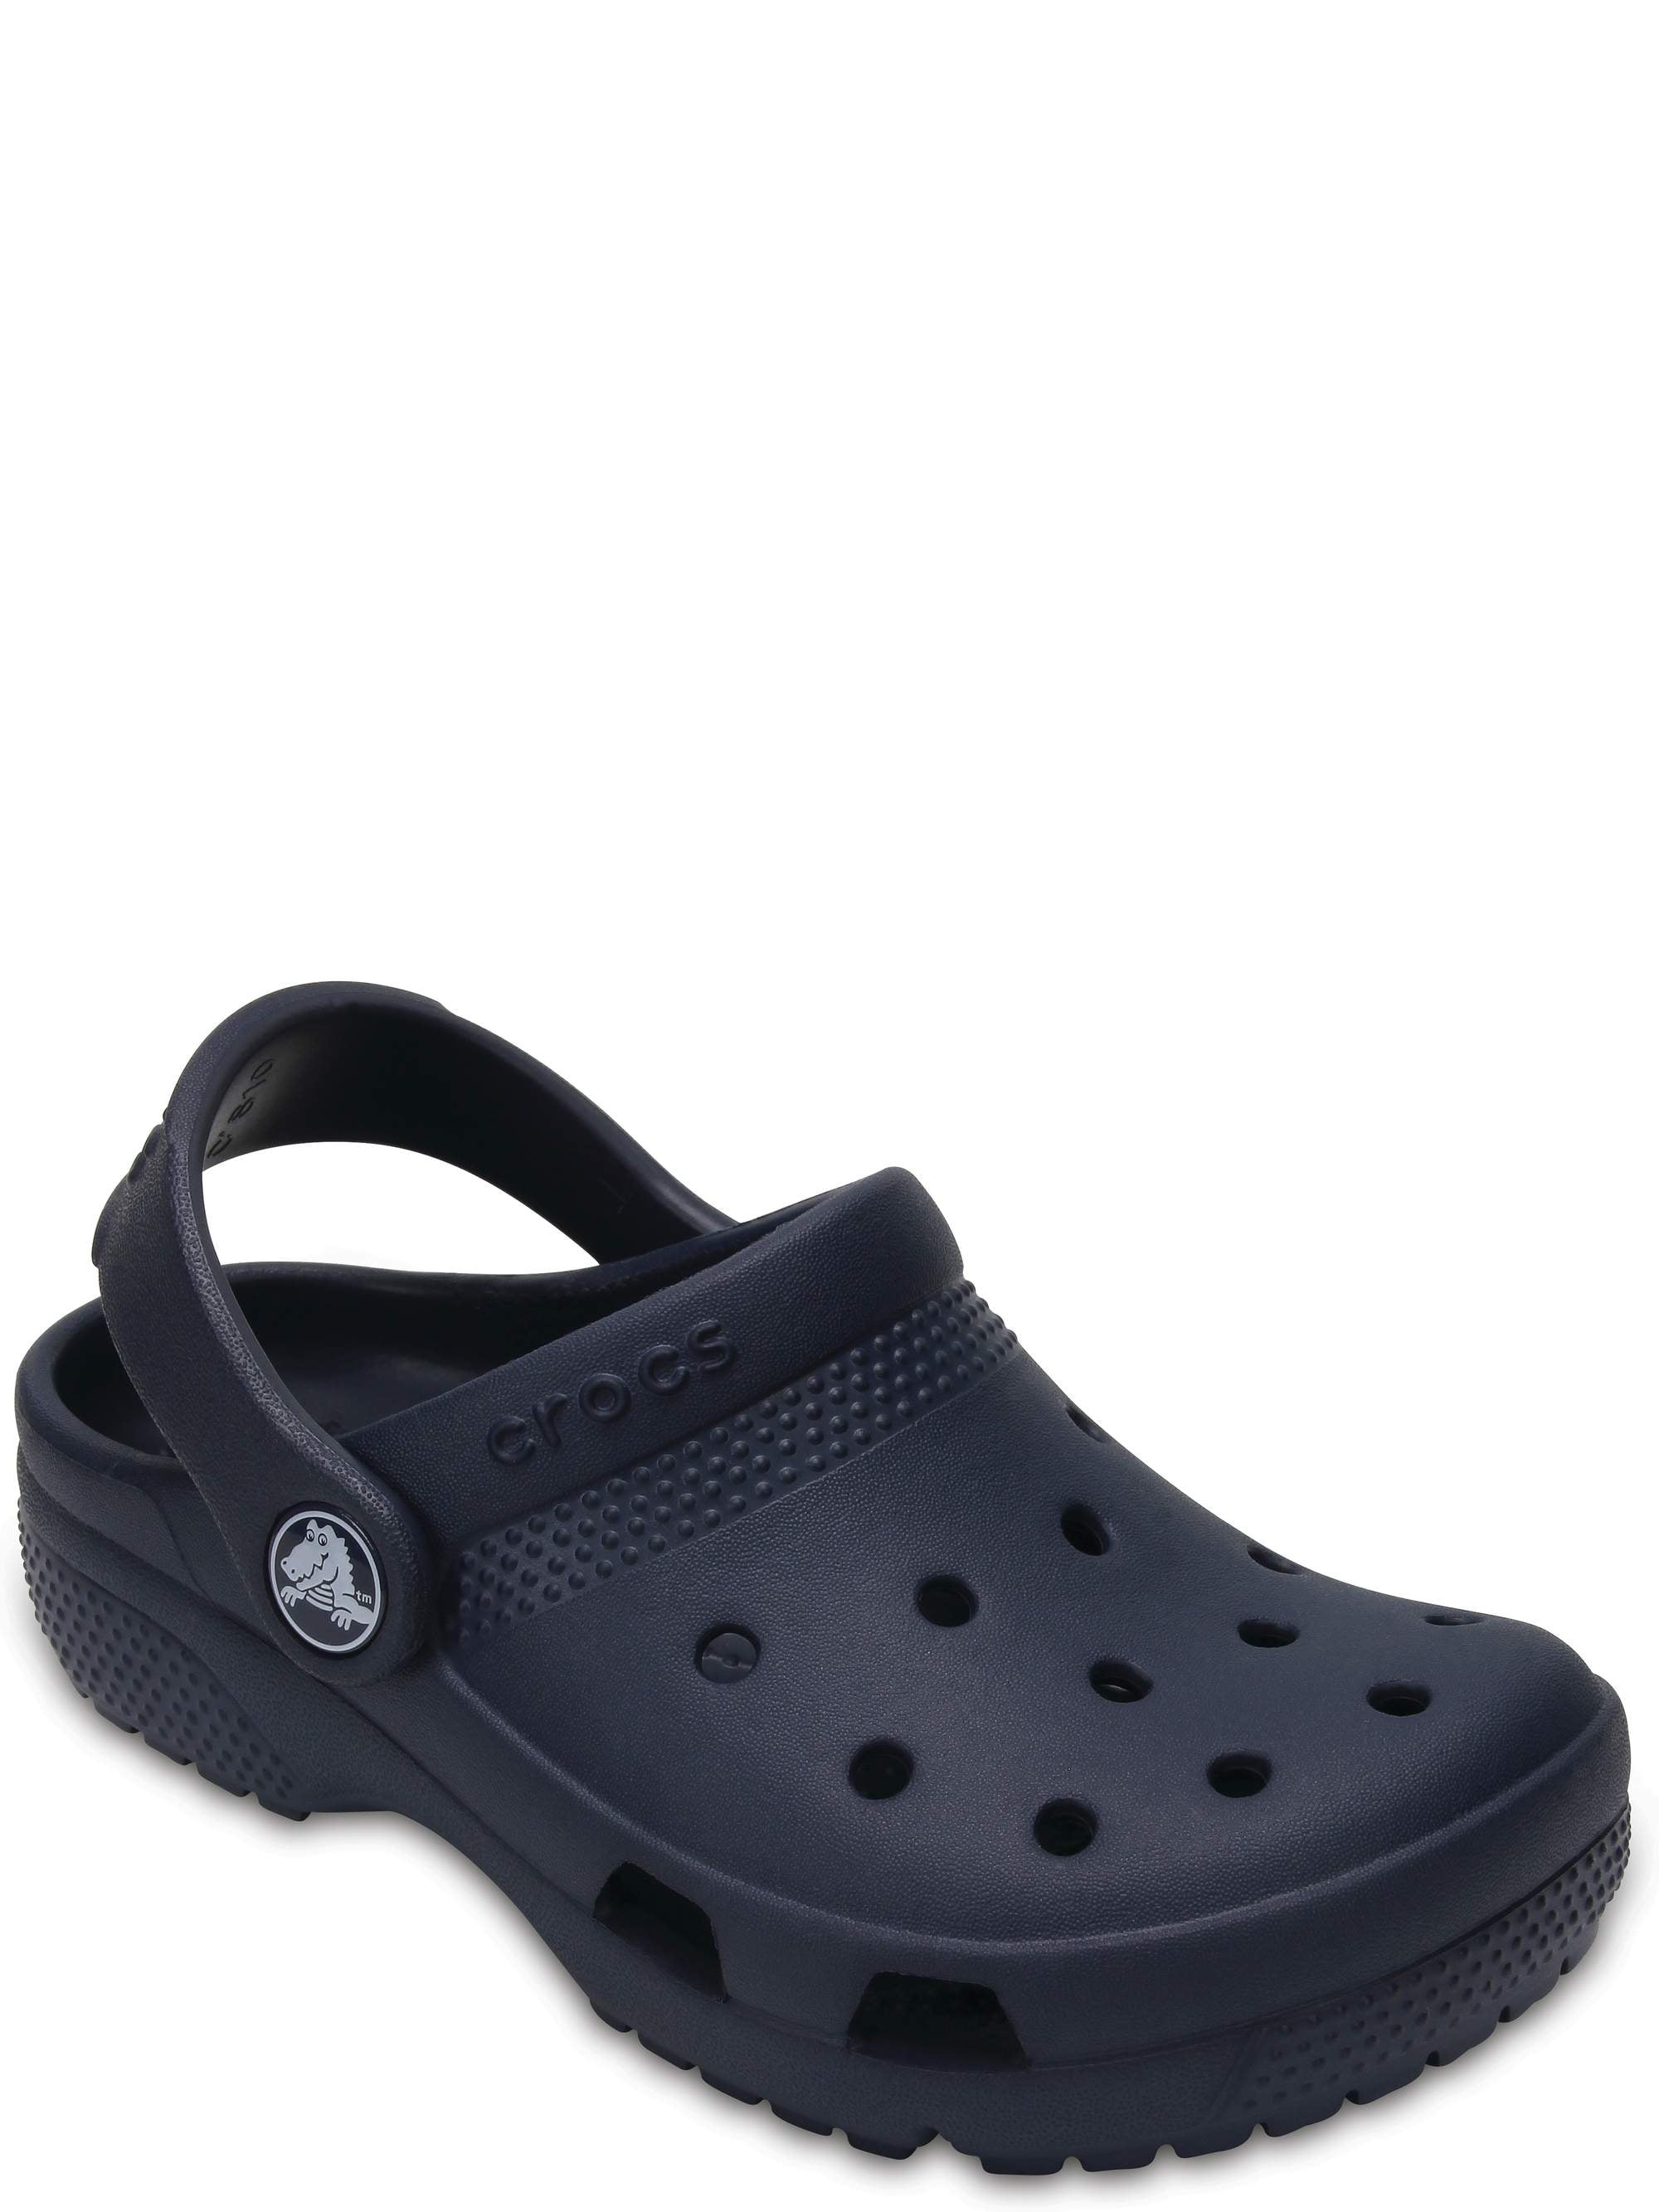 black crocs on sale